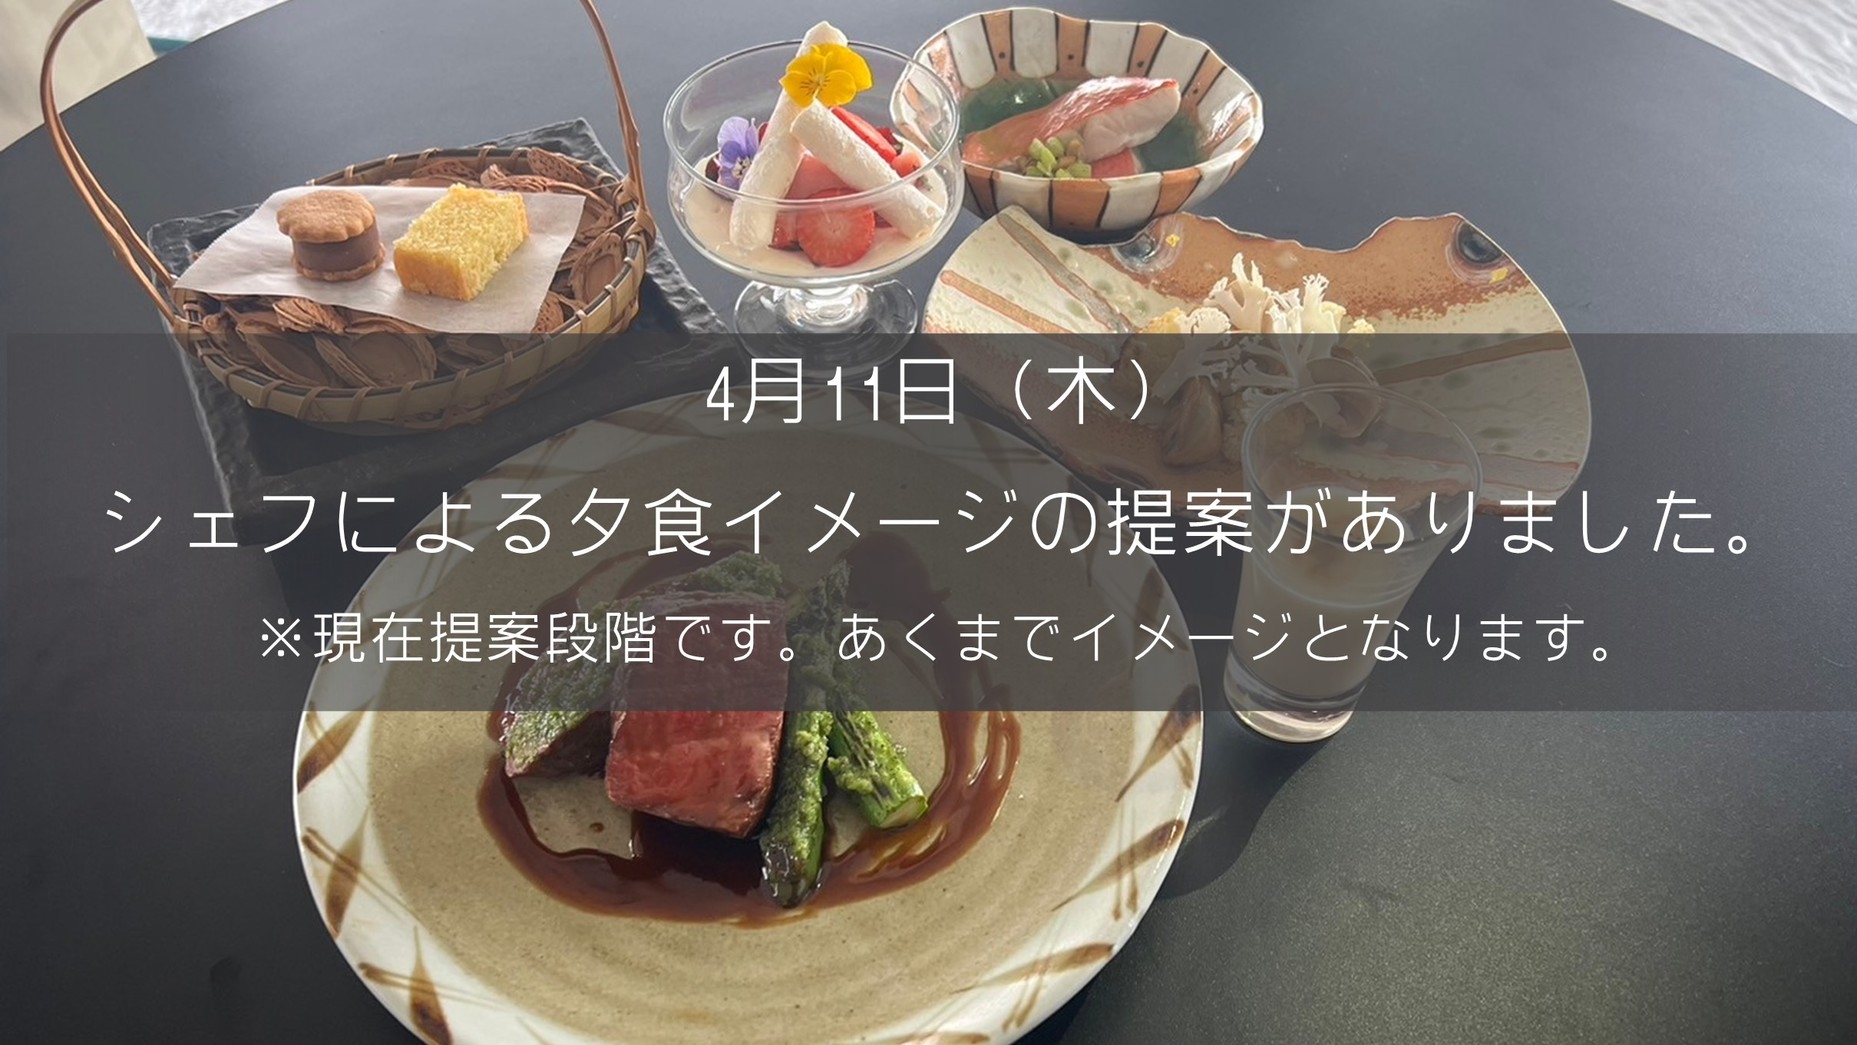 □日本一のサウナ宿へ□『基本プラン』【二食付】富士山の見える全室個室サウナ・プライベートサウナ付旅館